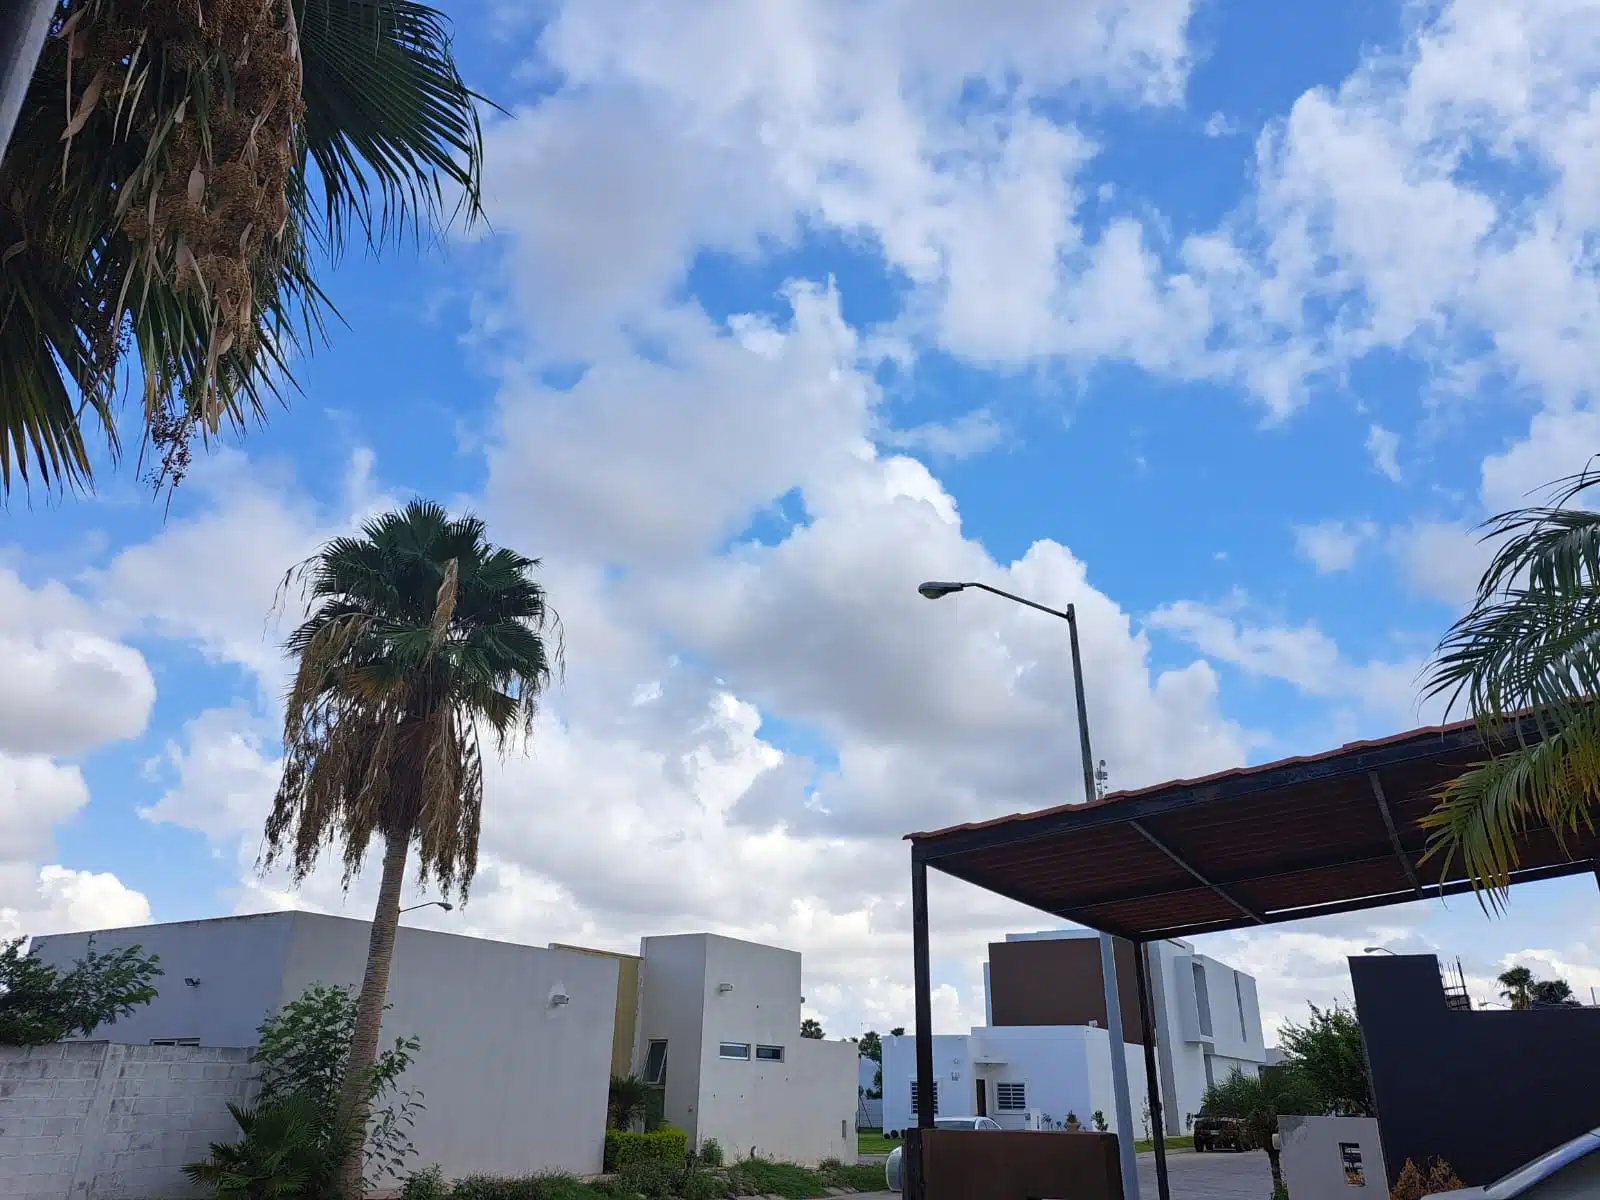 Cielo nuboso en Sinaloa